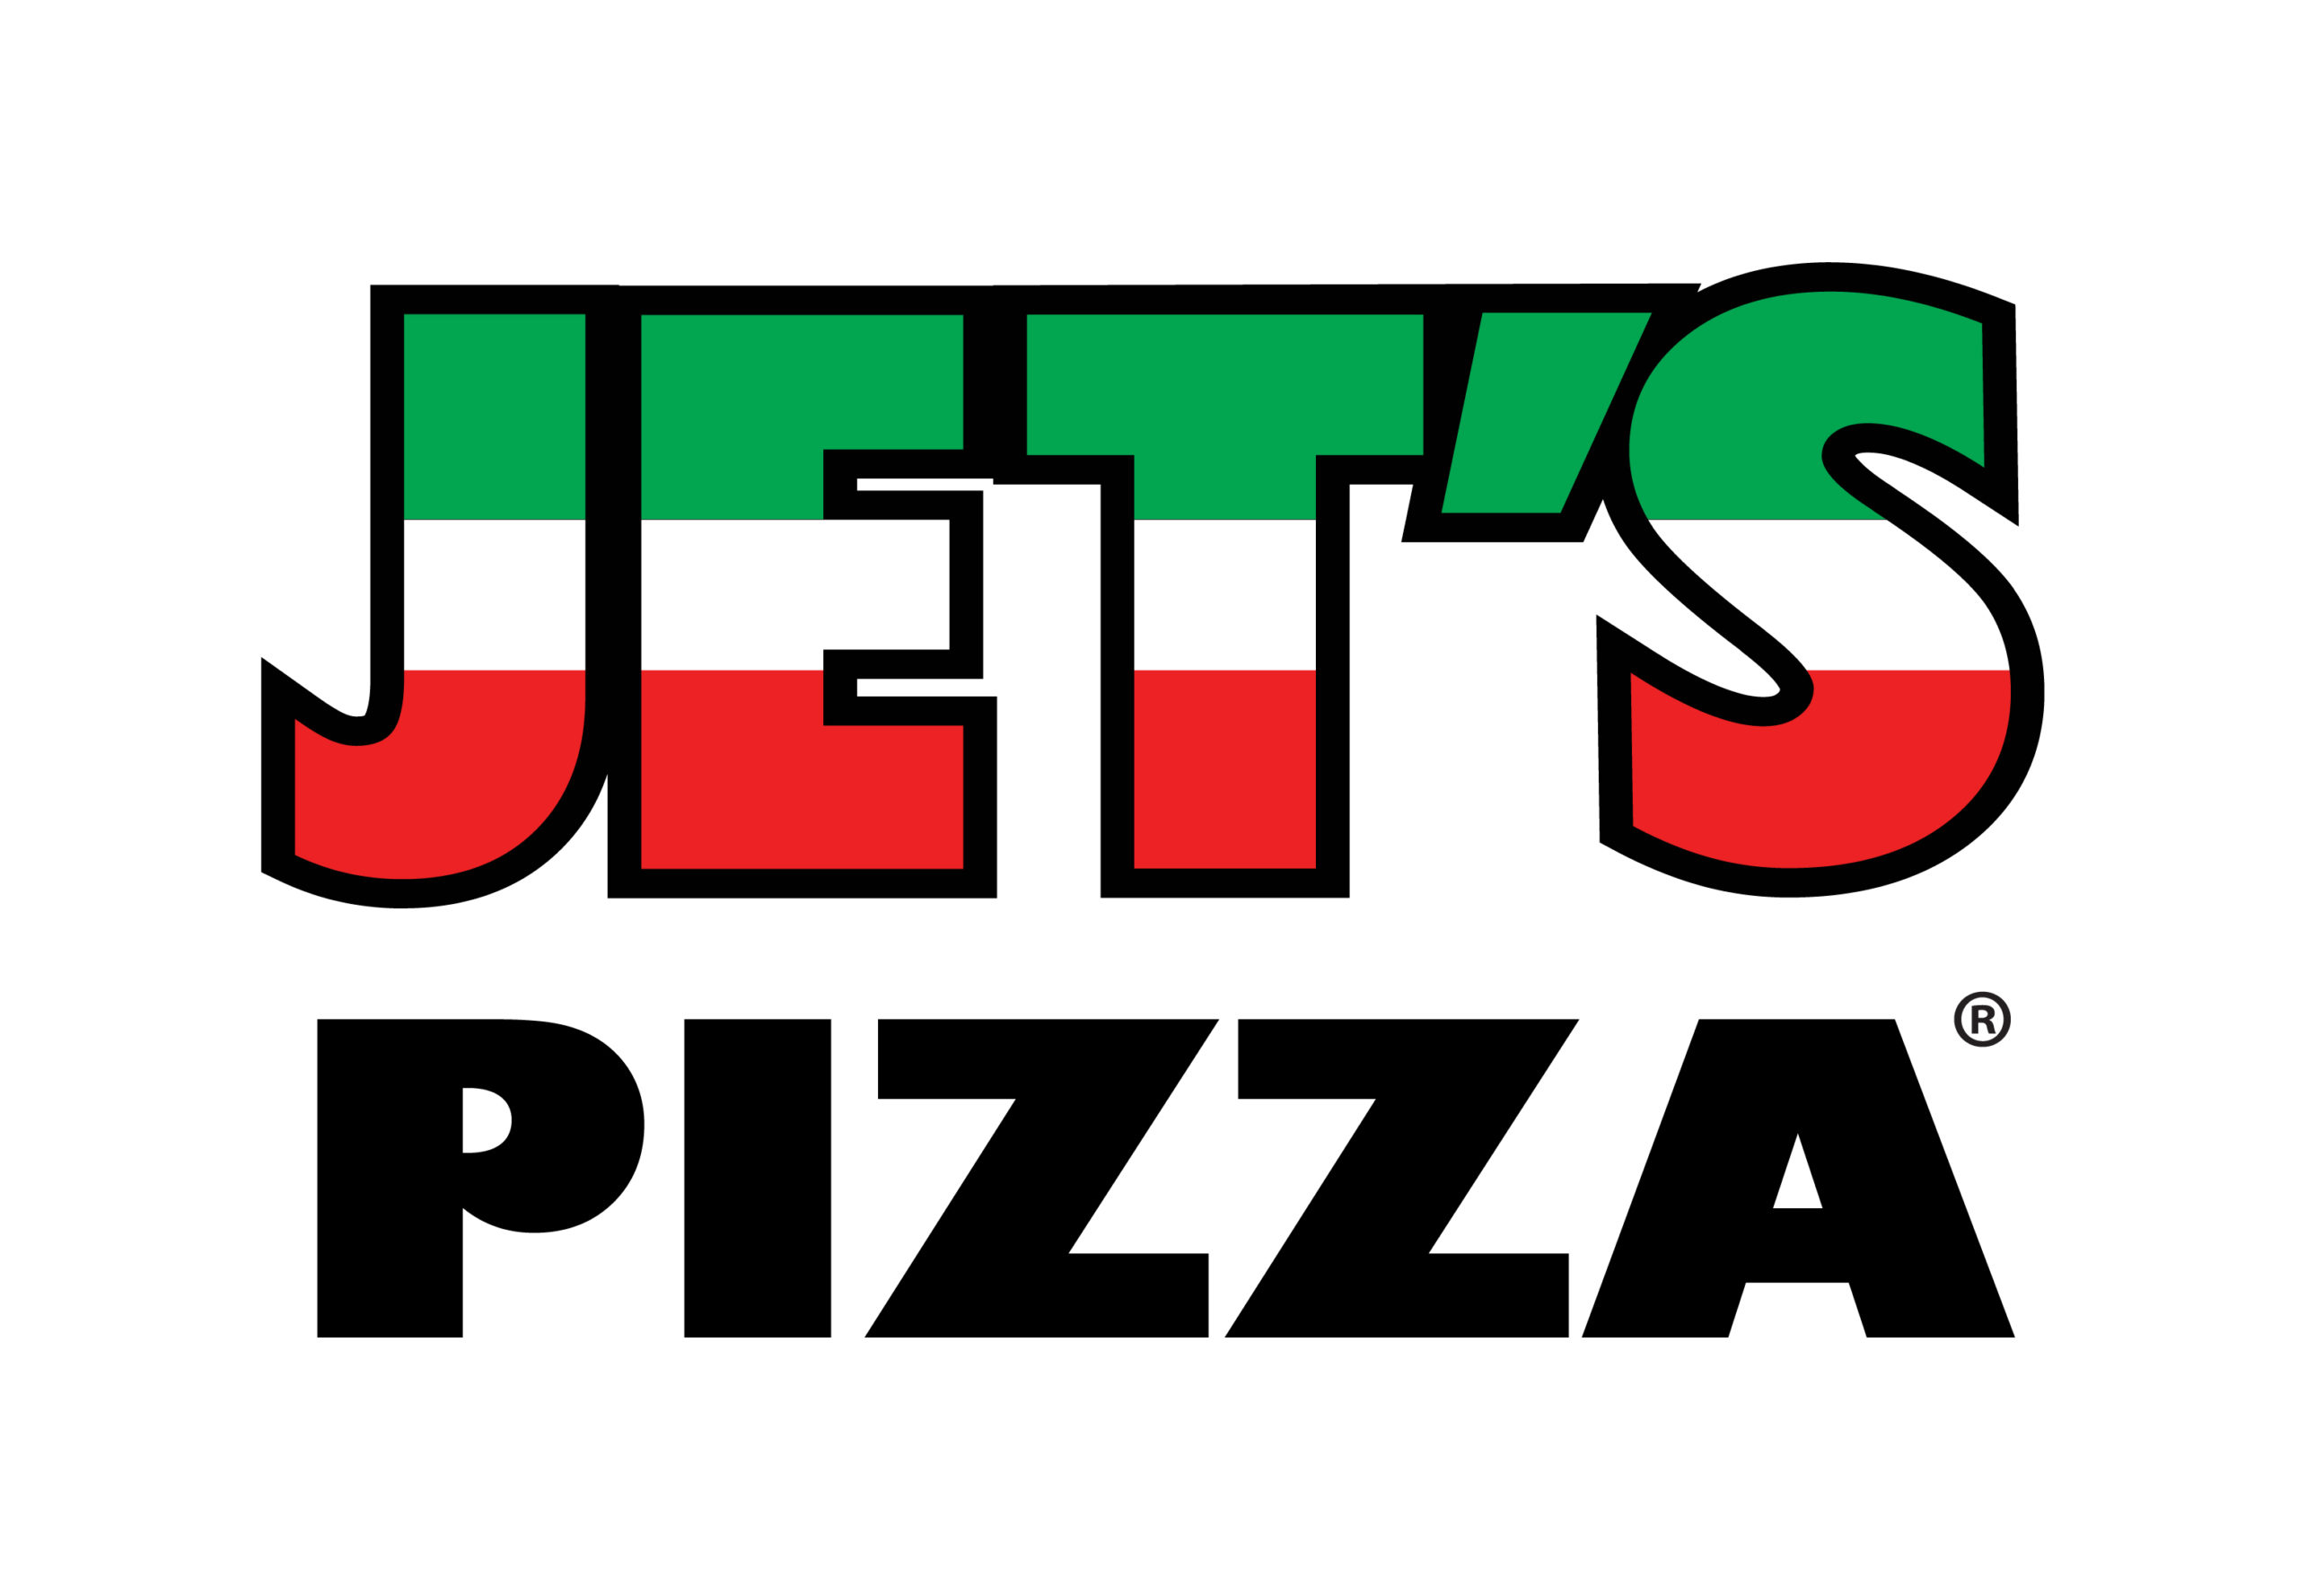 Jet’s Pizza